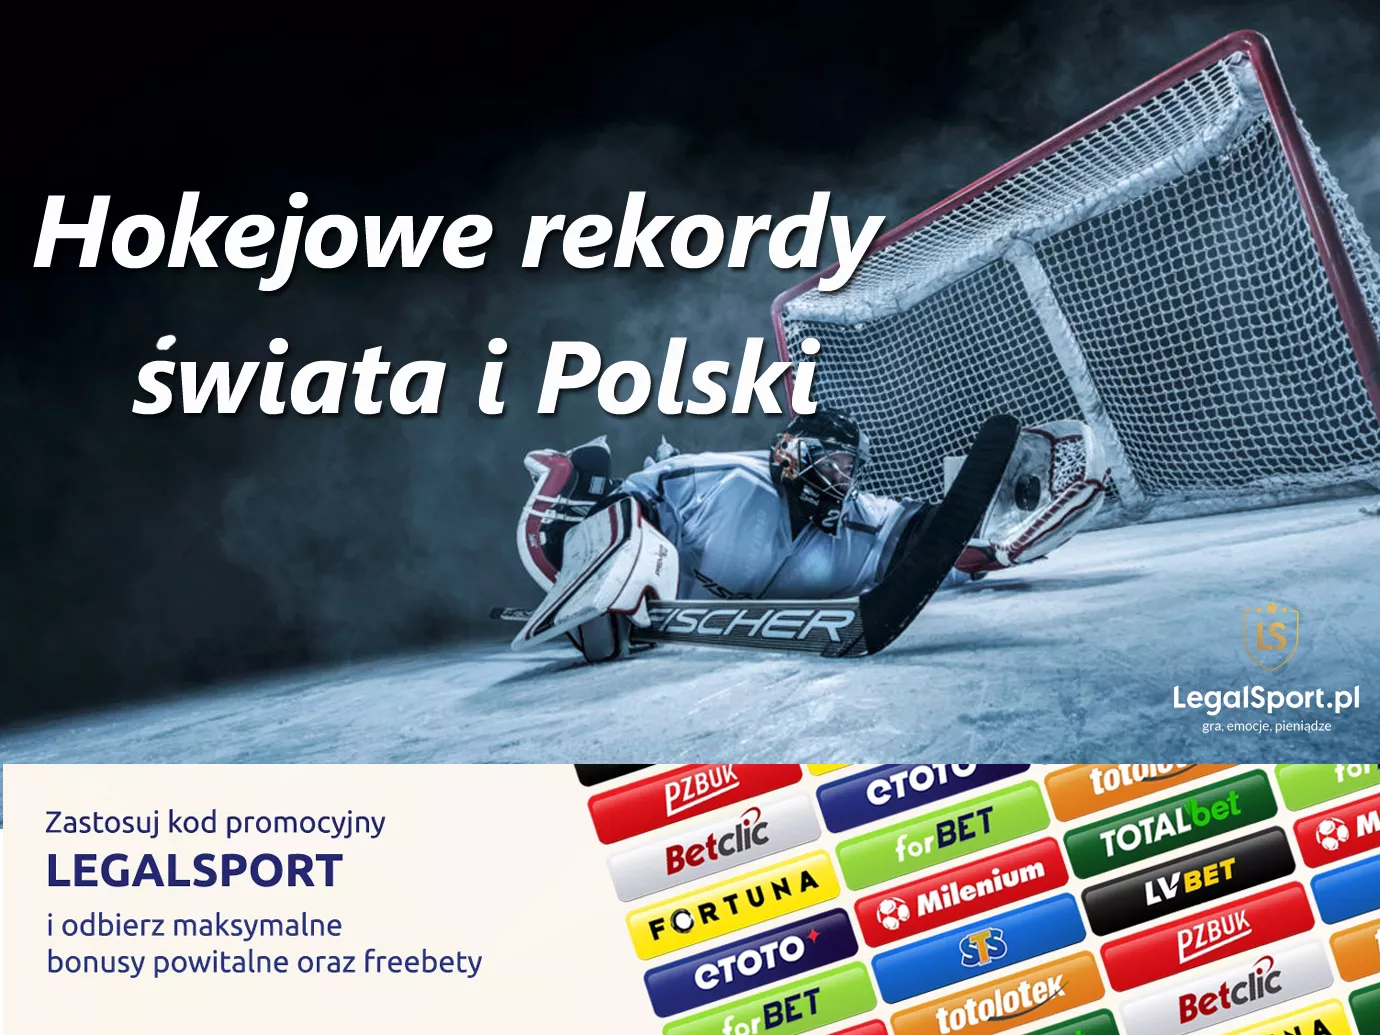 Największe rekordy Polski i świata w hokeju na lodzie